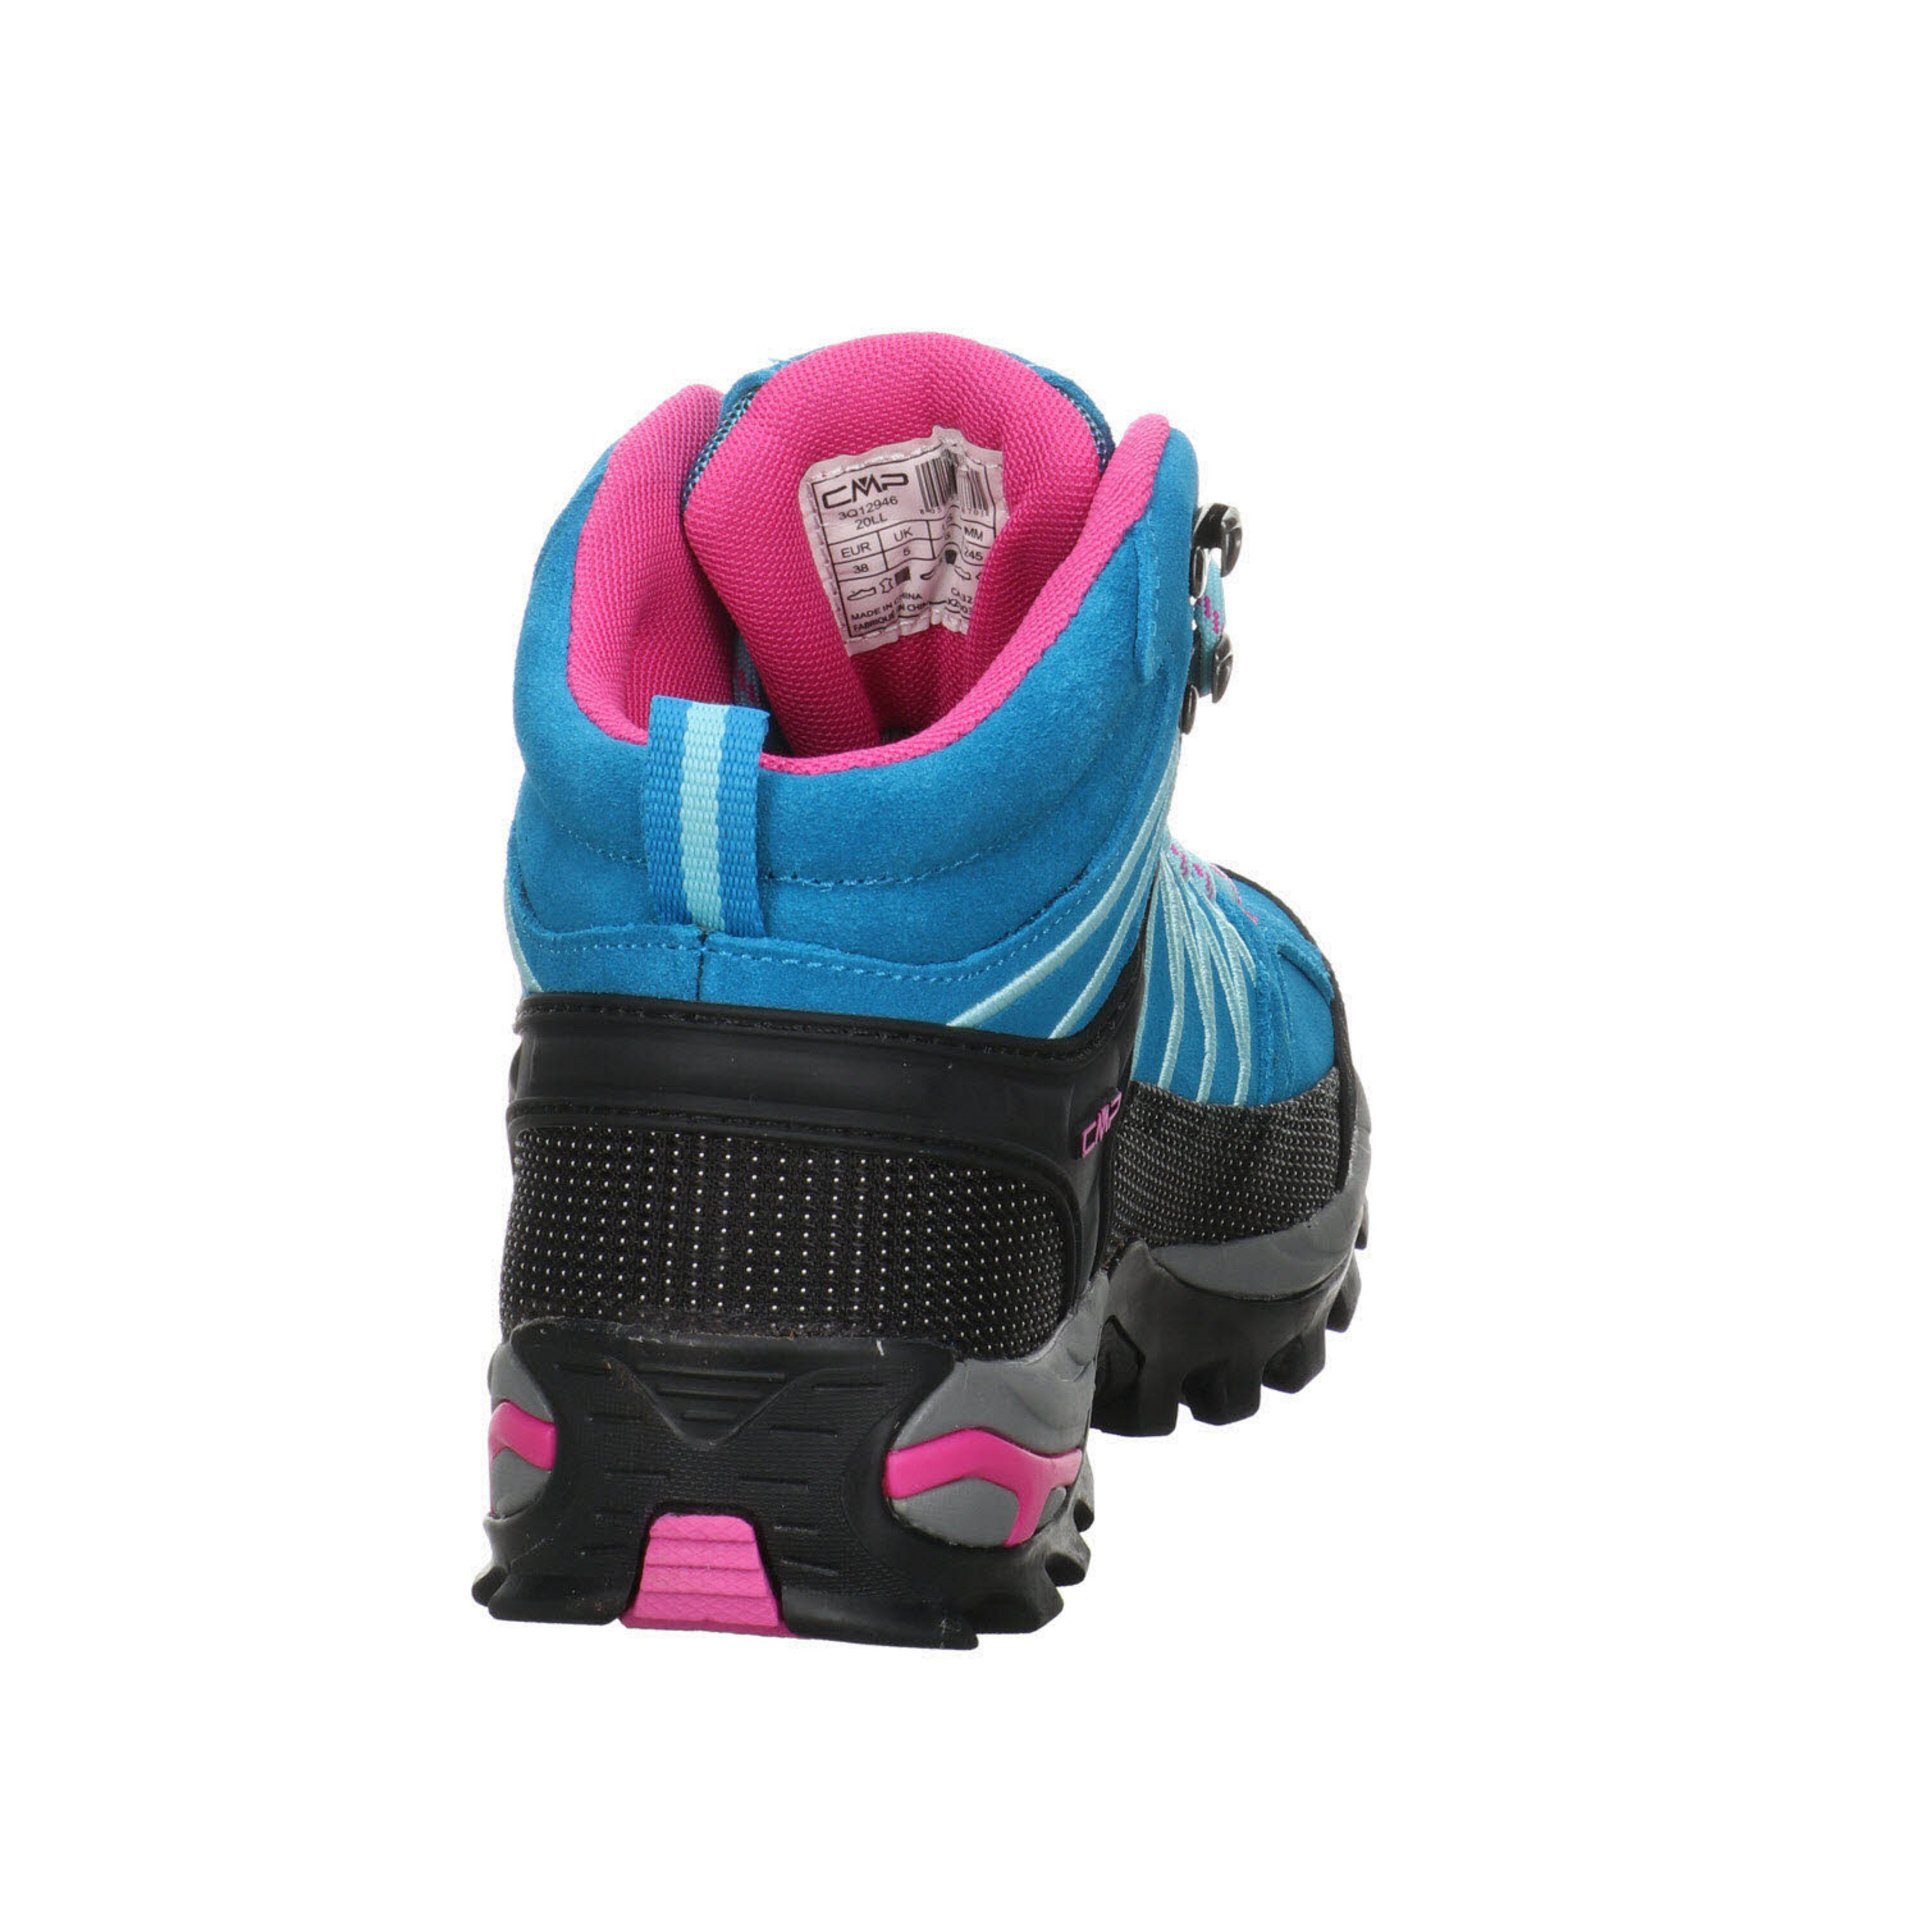 Outdoorschuh Rigel Damen Leder-/Textilkombination CMP türkis-pink Schuhe Mid Outdoorschuh Outdoor